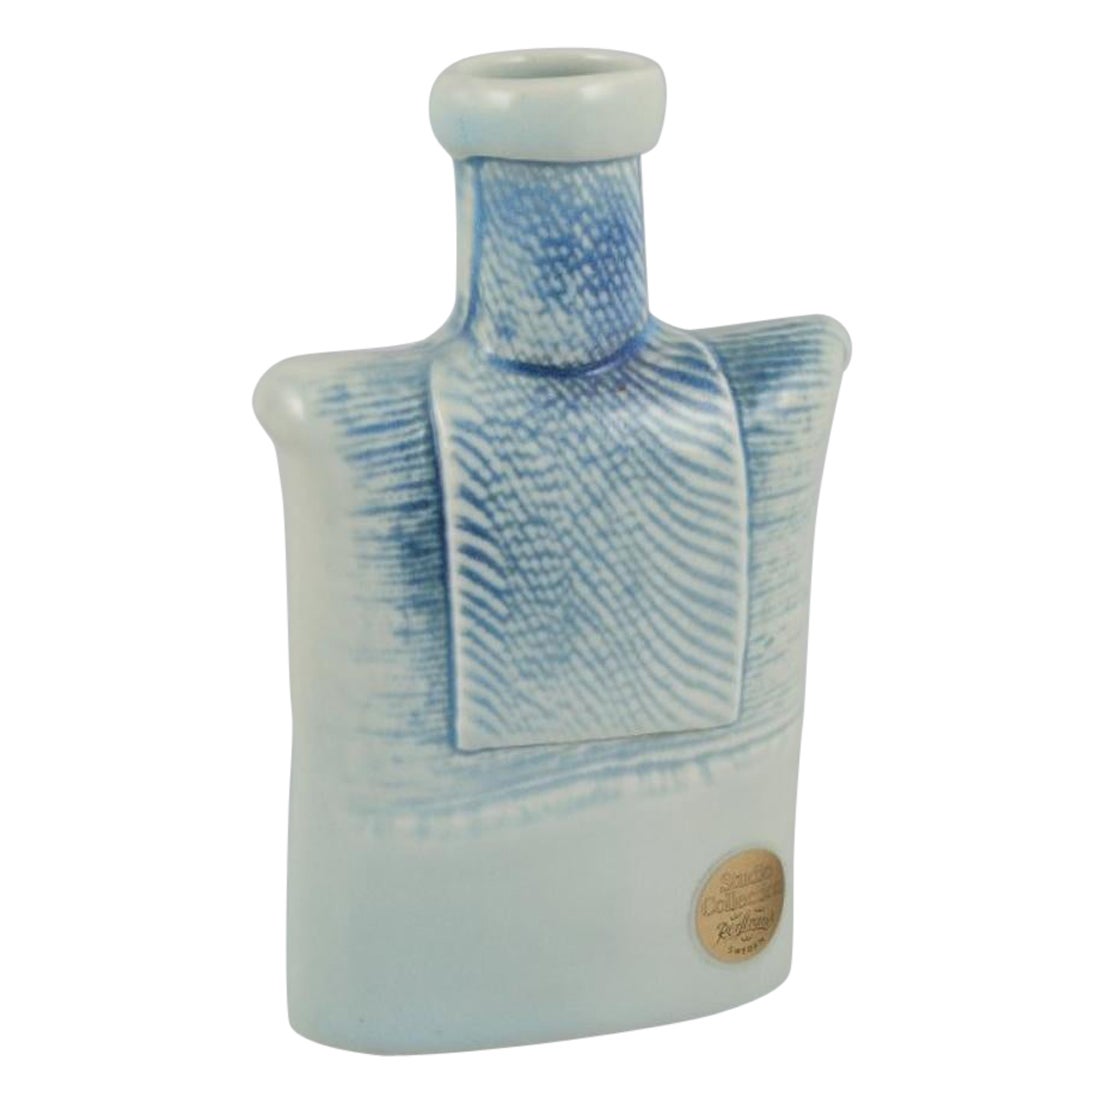 Suzanne Öhlén for Rörstrand. Porcelain vase with glaze in blue tones. For Sale